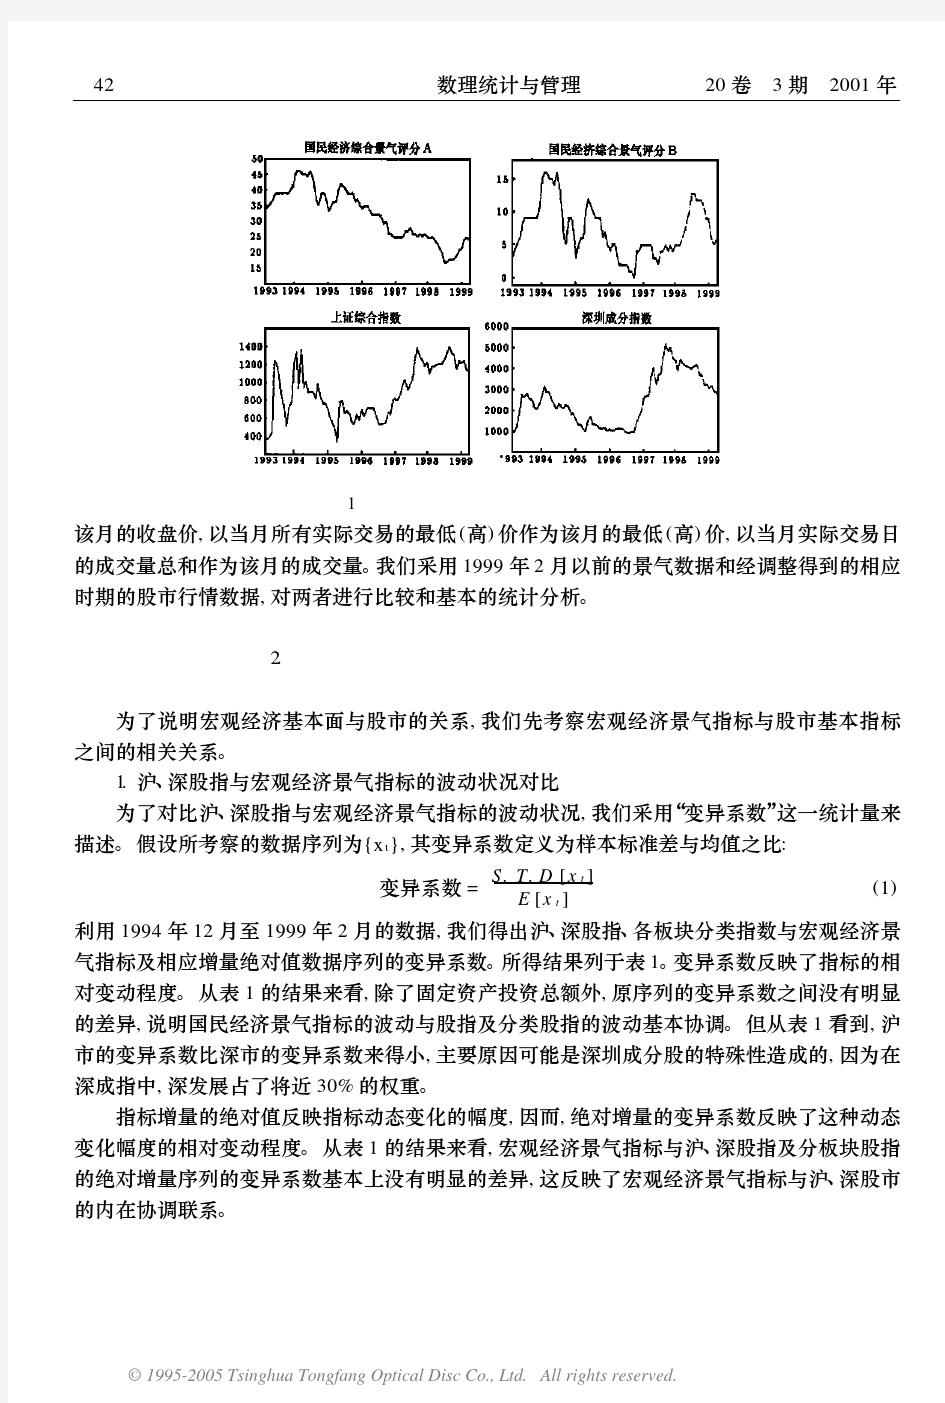 中国股市与宏观经济基本面的关系